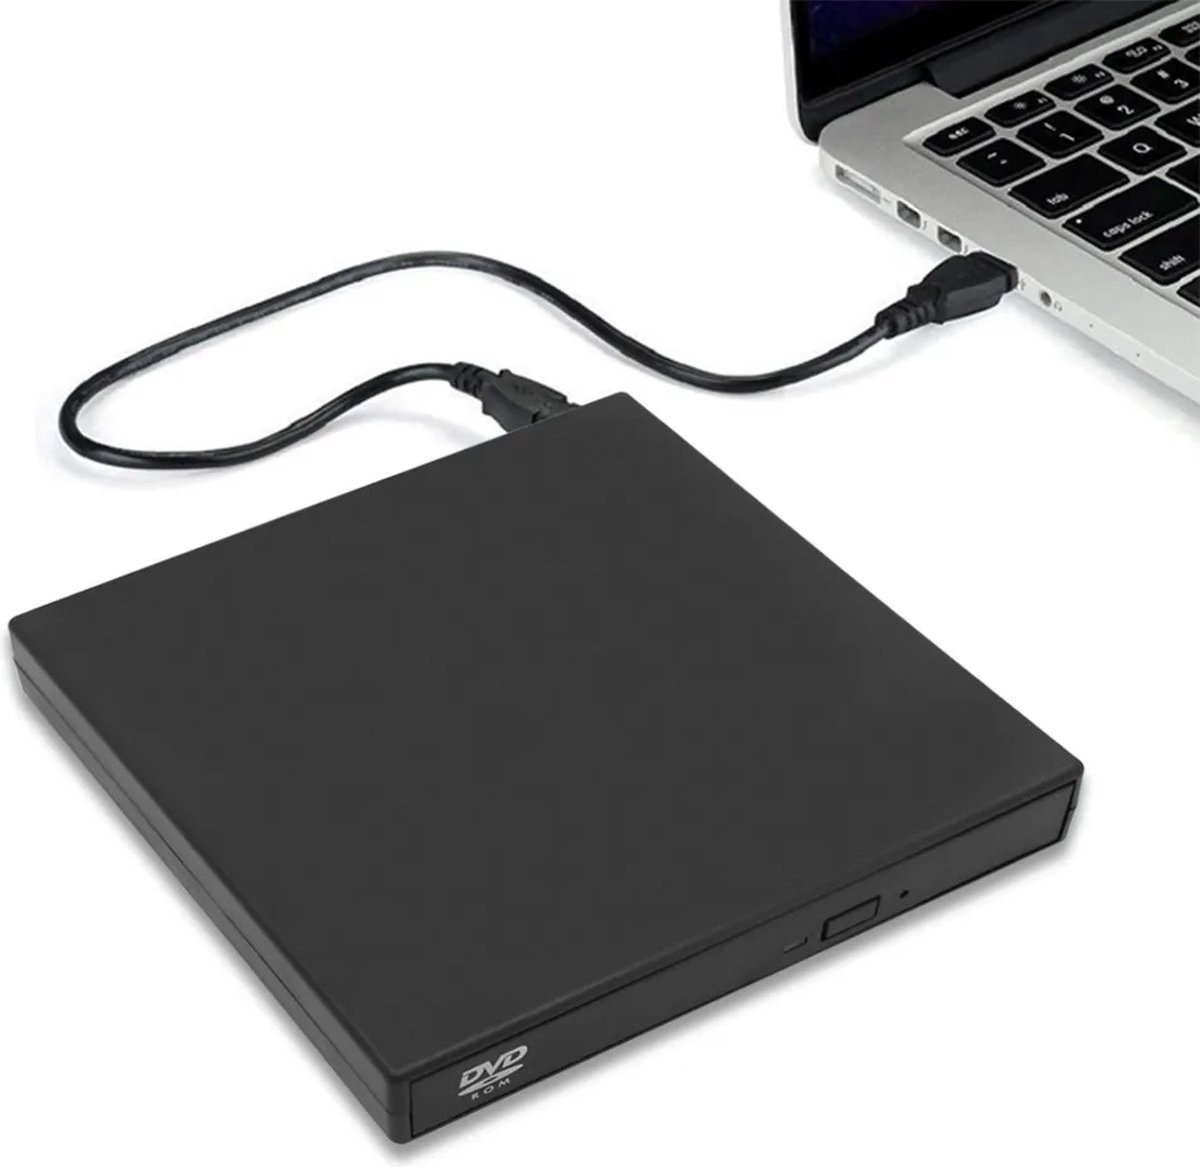 ShopbijStef - - DVD Speler Laptop - Externe DVD Speler voor Laptop - Geschikt voor Windows, Linux en Macbook - USB 3.0